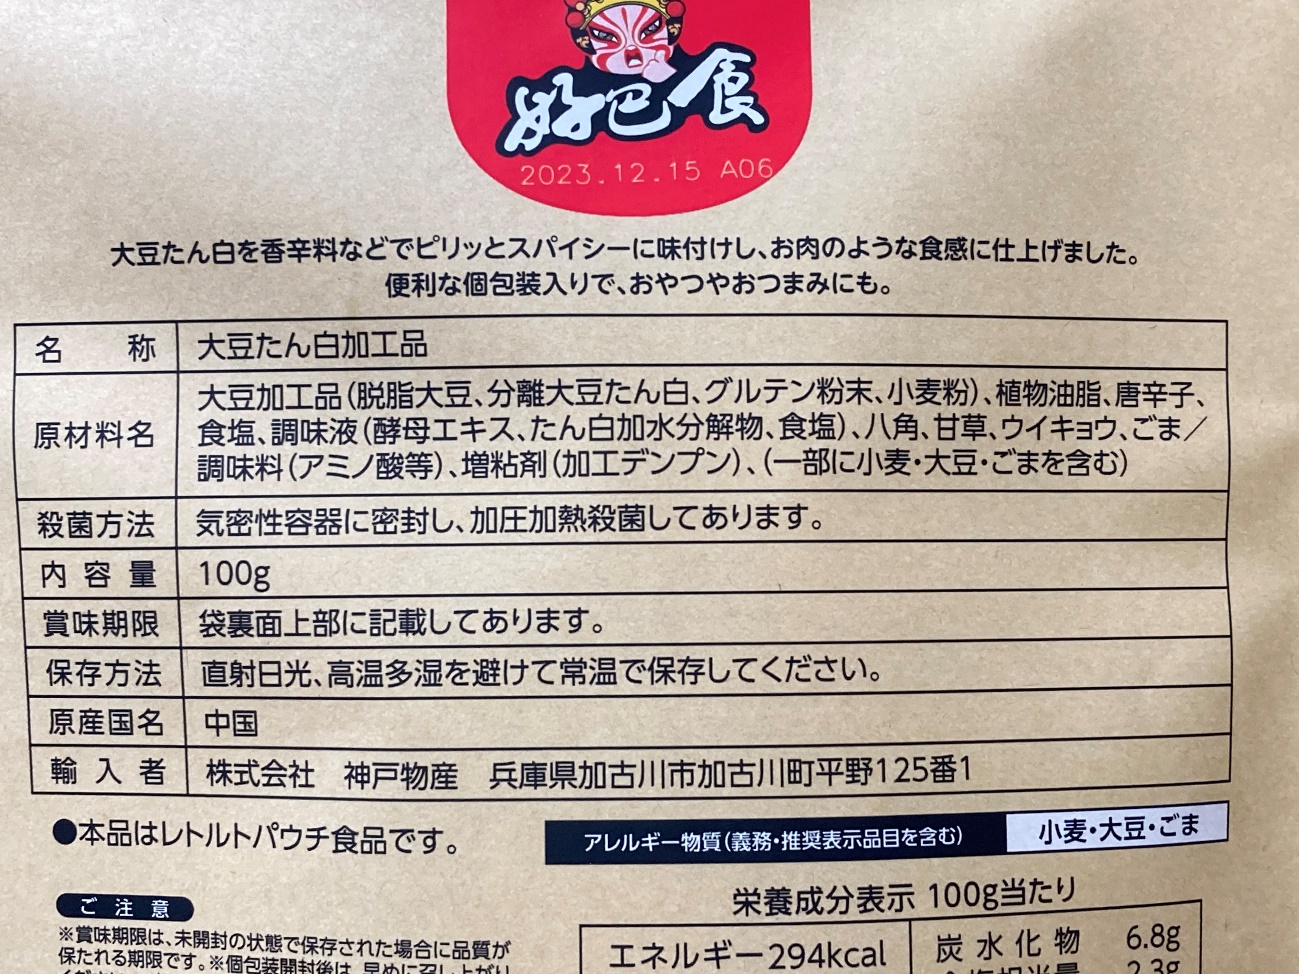 業務スーパーの味付きベジタリアンステーキ麻辣味の原材料名と原産国名の表記